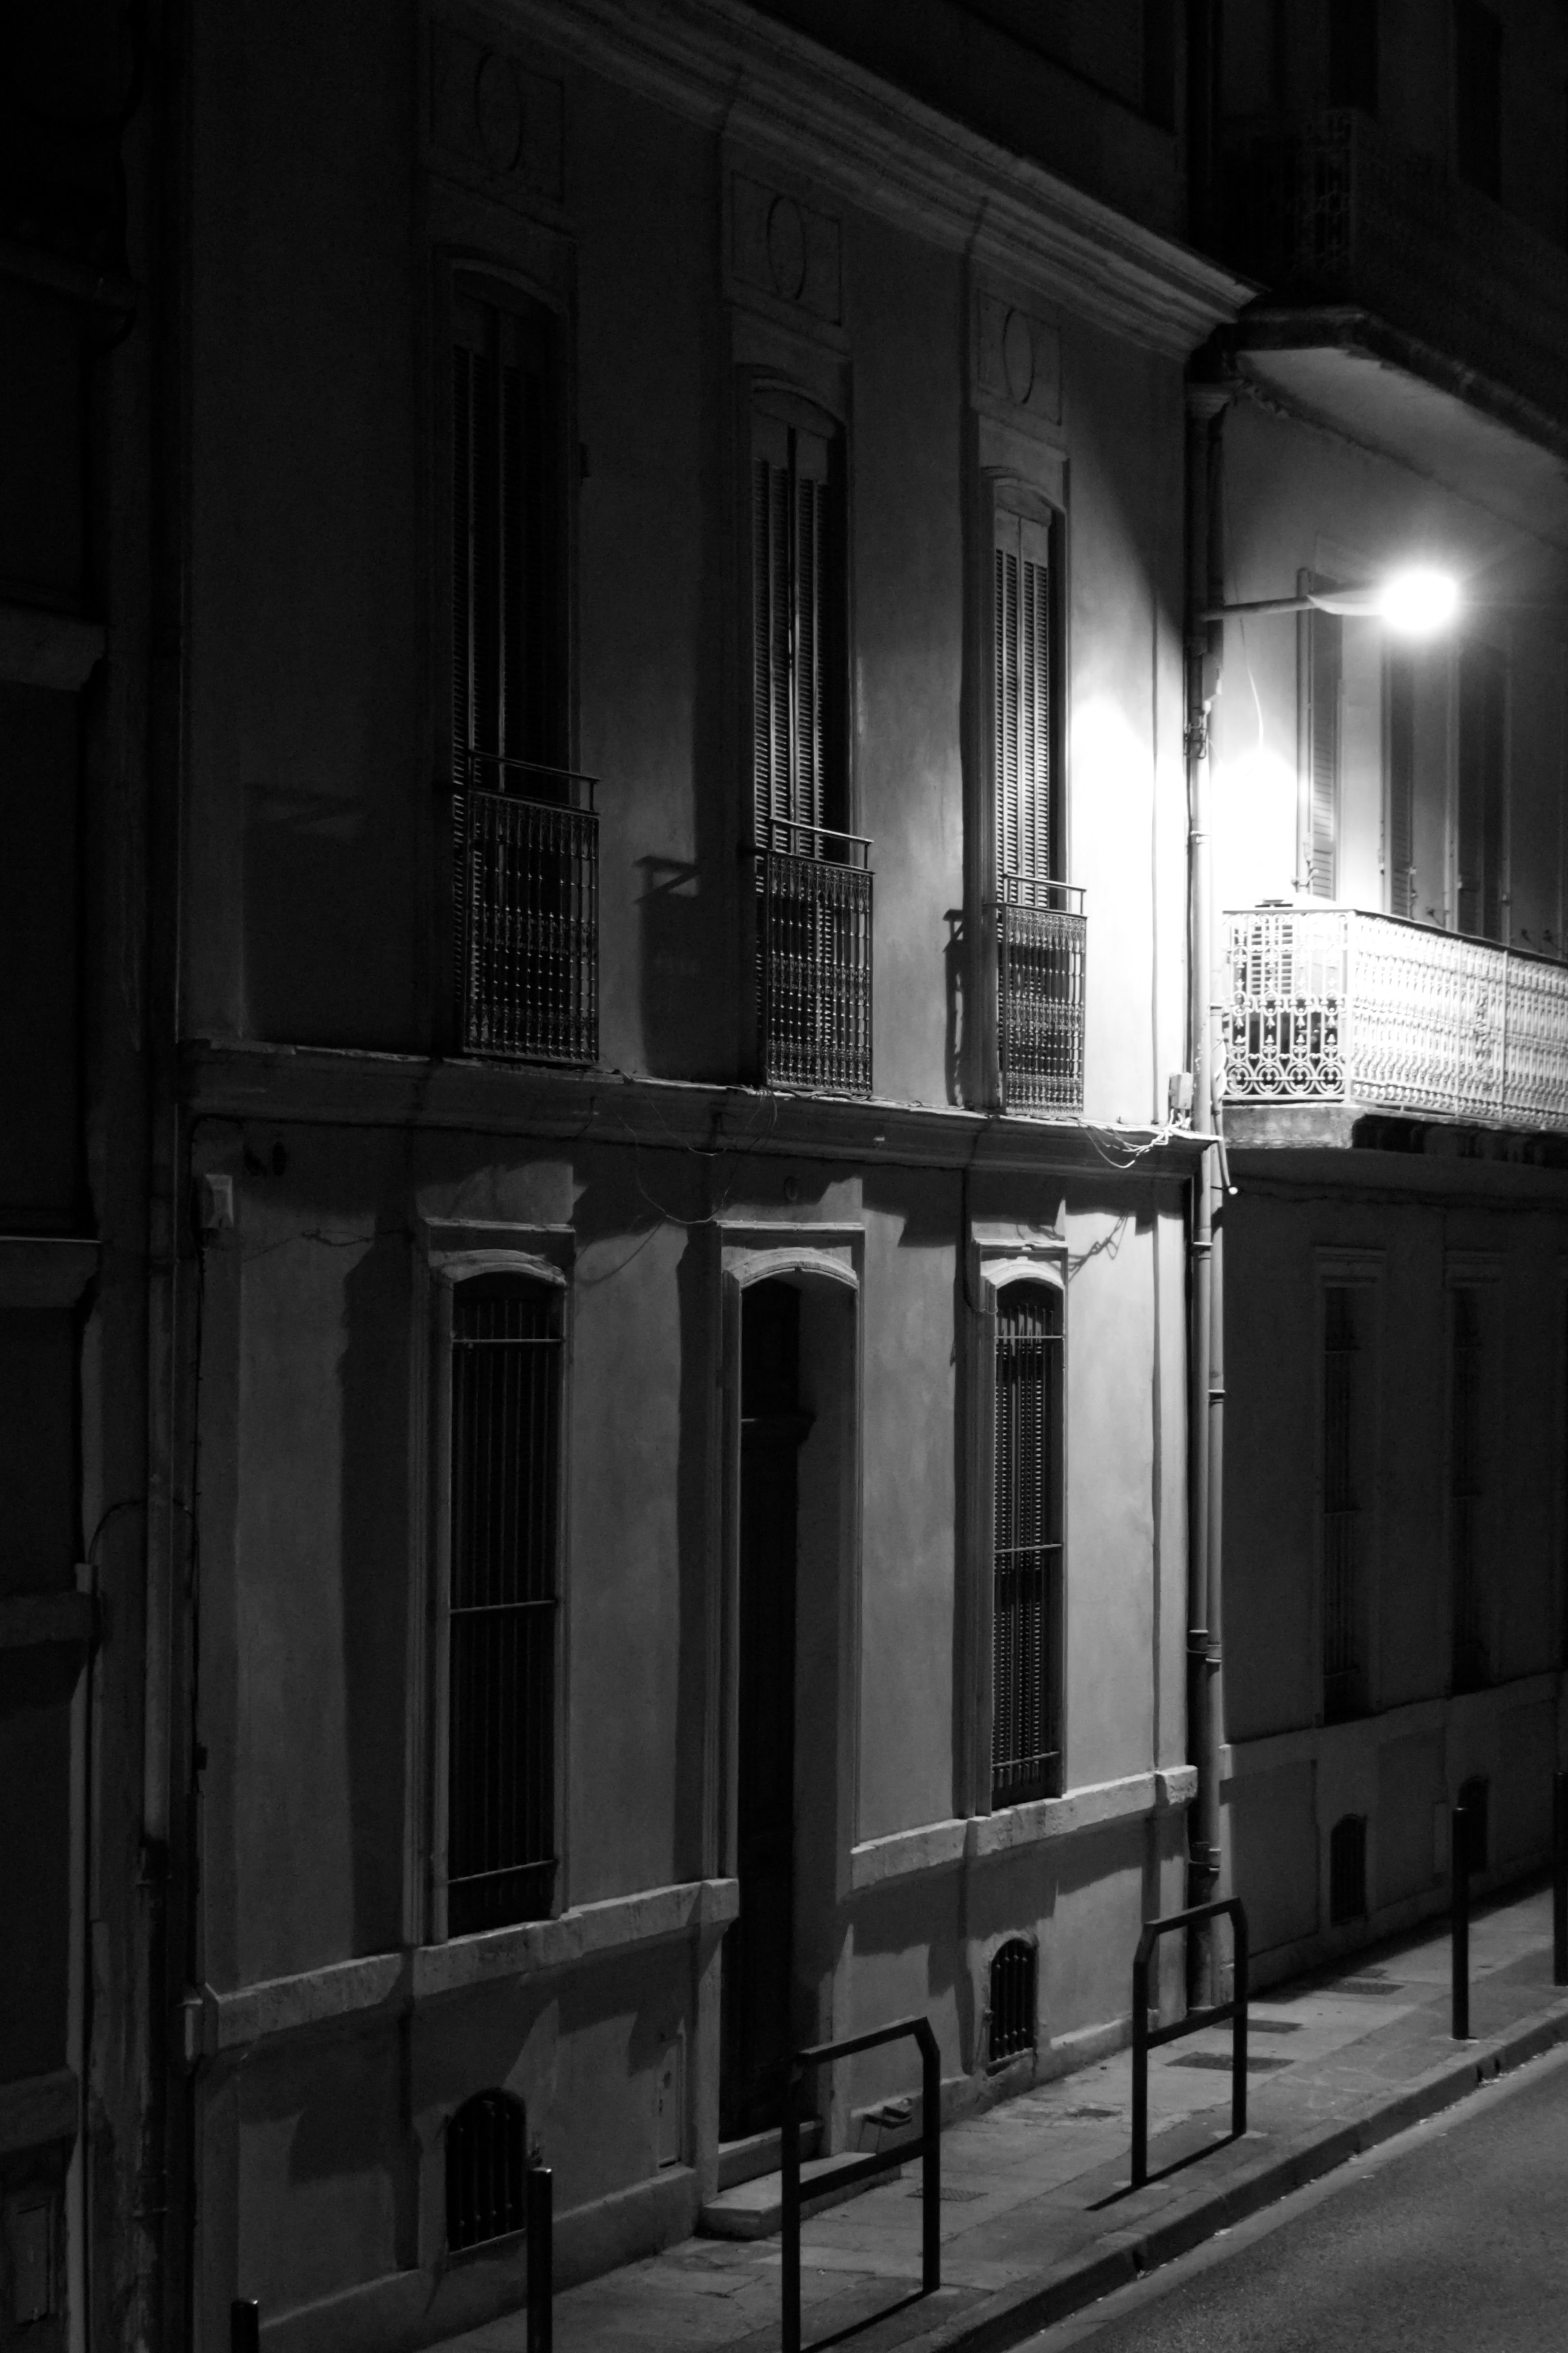 Nîmes Street at Night